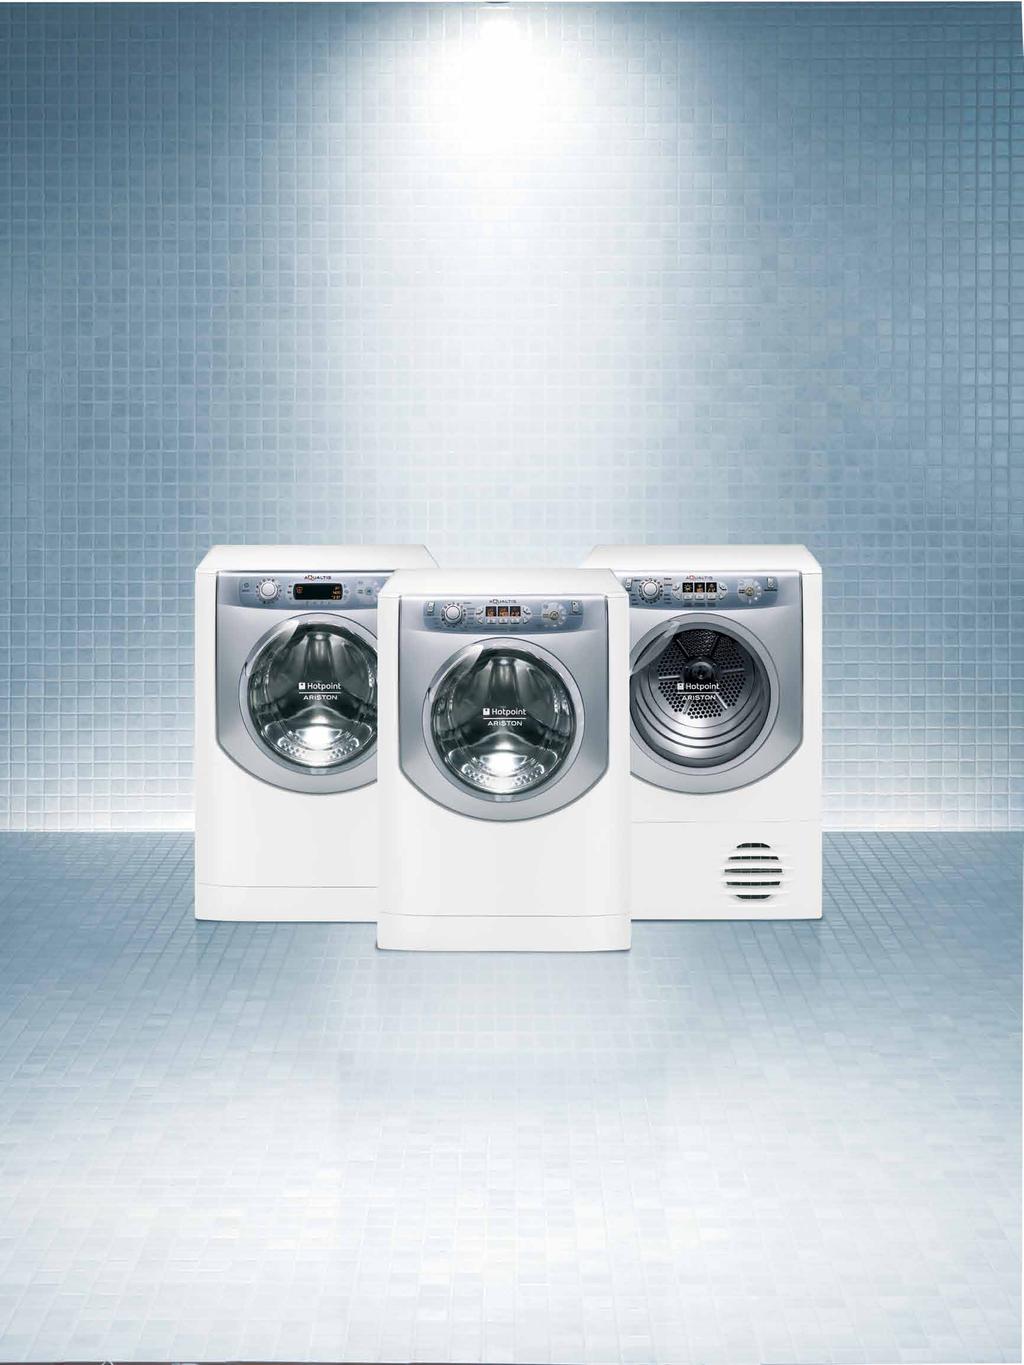 Nuova Aqualtis: una tecnologia inno vativa in una nuova linea completa Se vuoi prenderti davvero cura di te e del tuo bucato, non basta una lavabiancheria, un asciugatrice o una lavasciuga: scegli